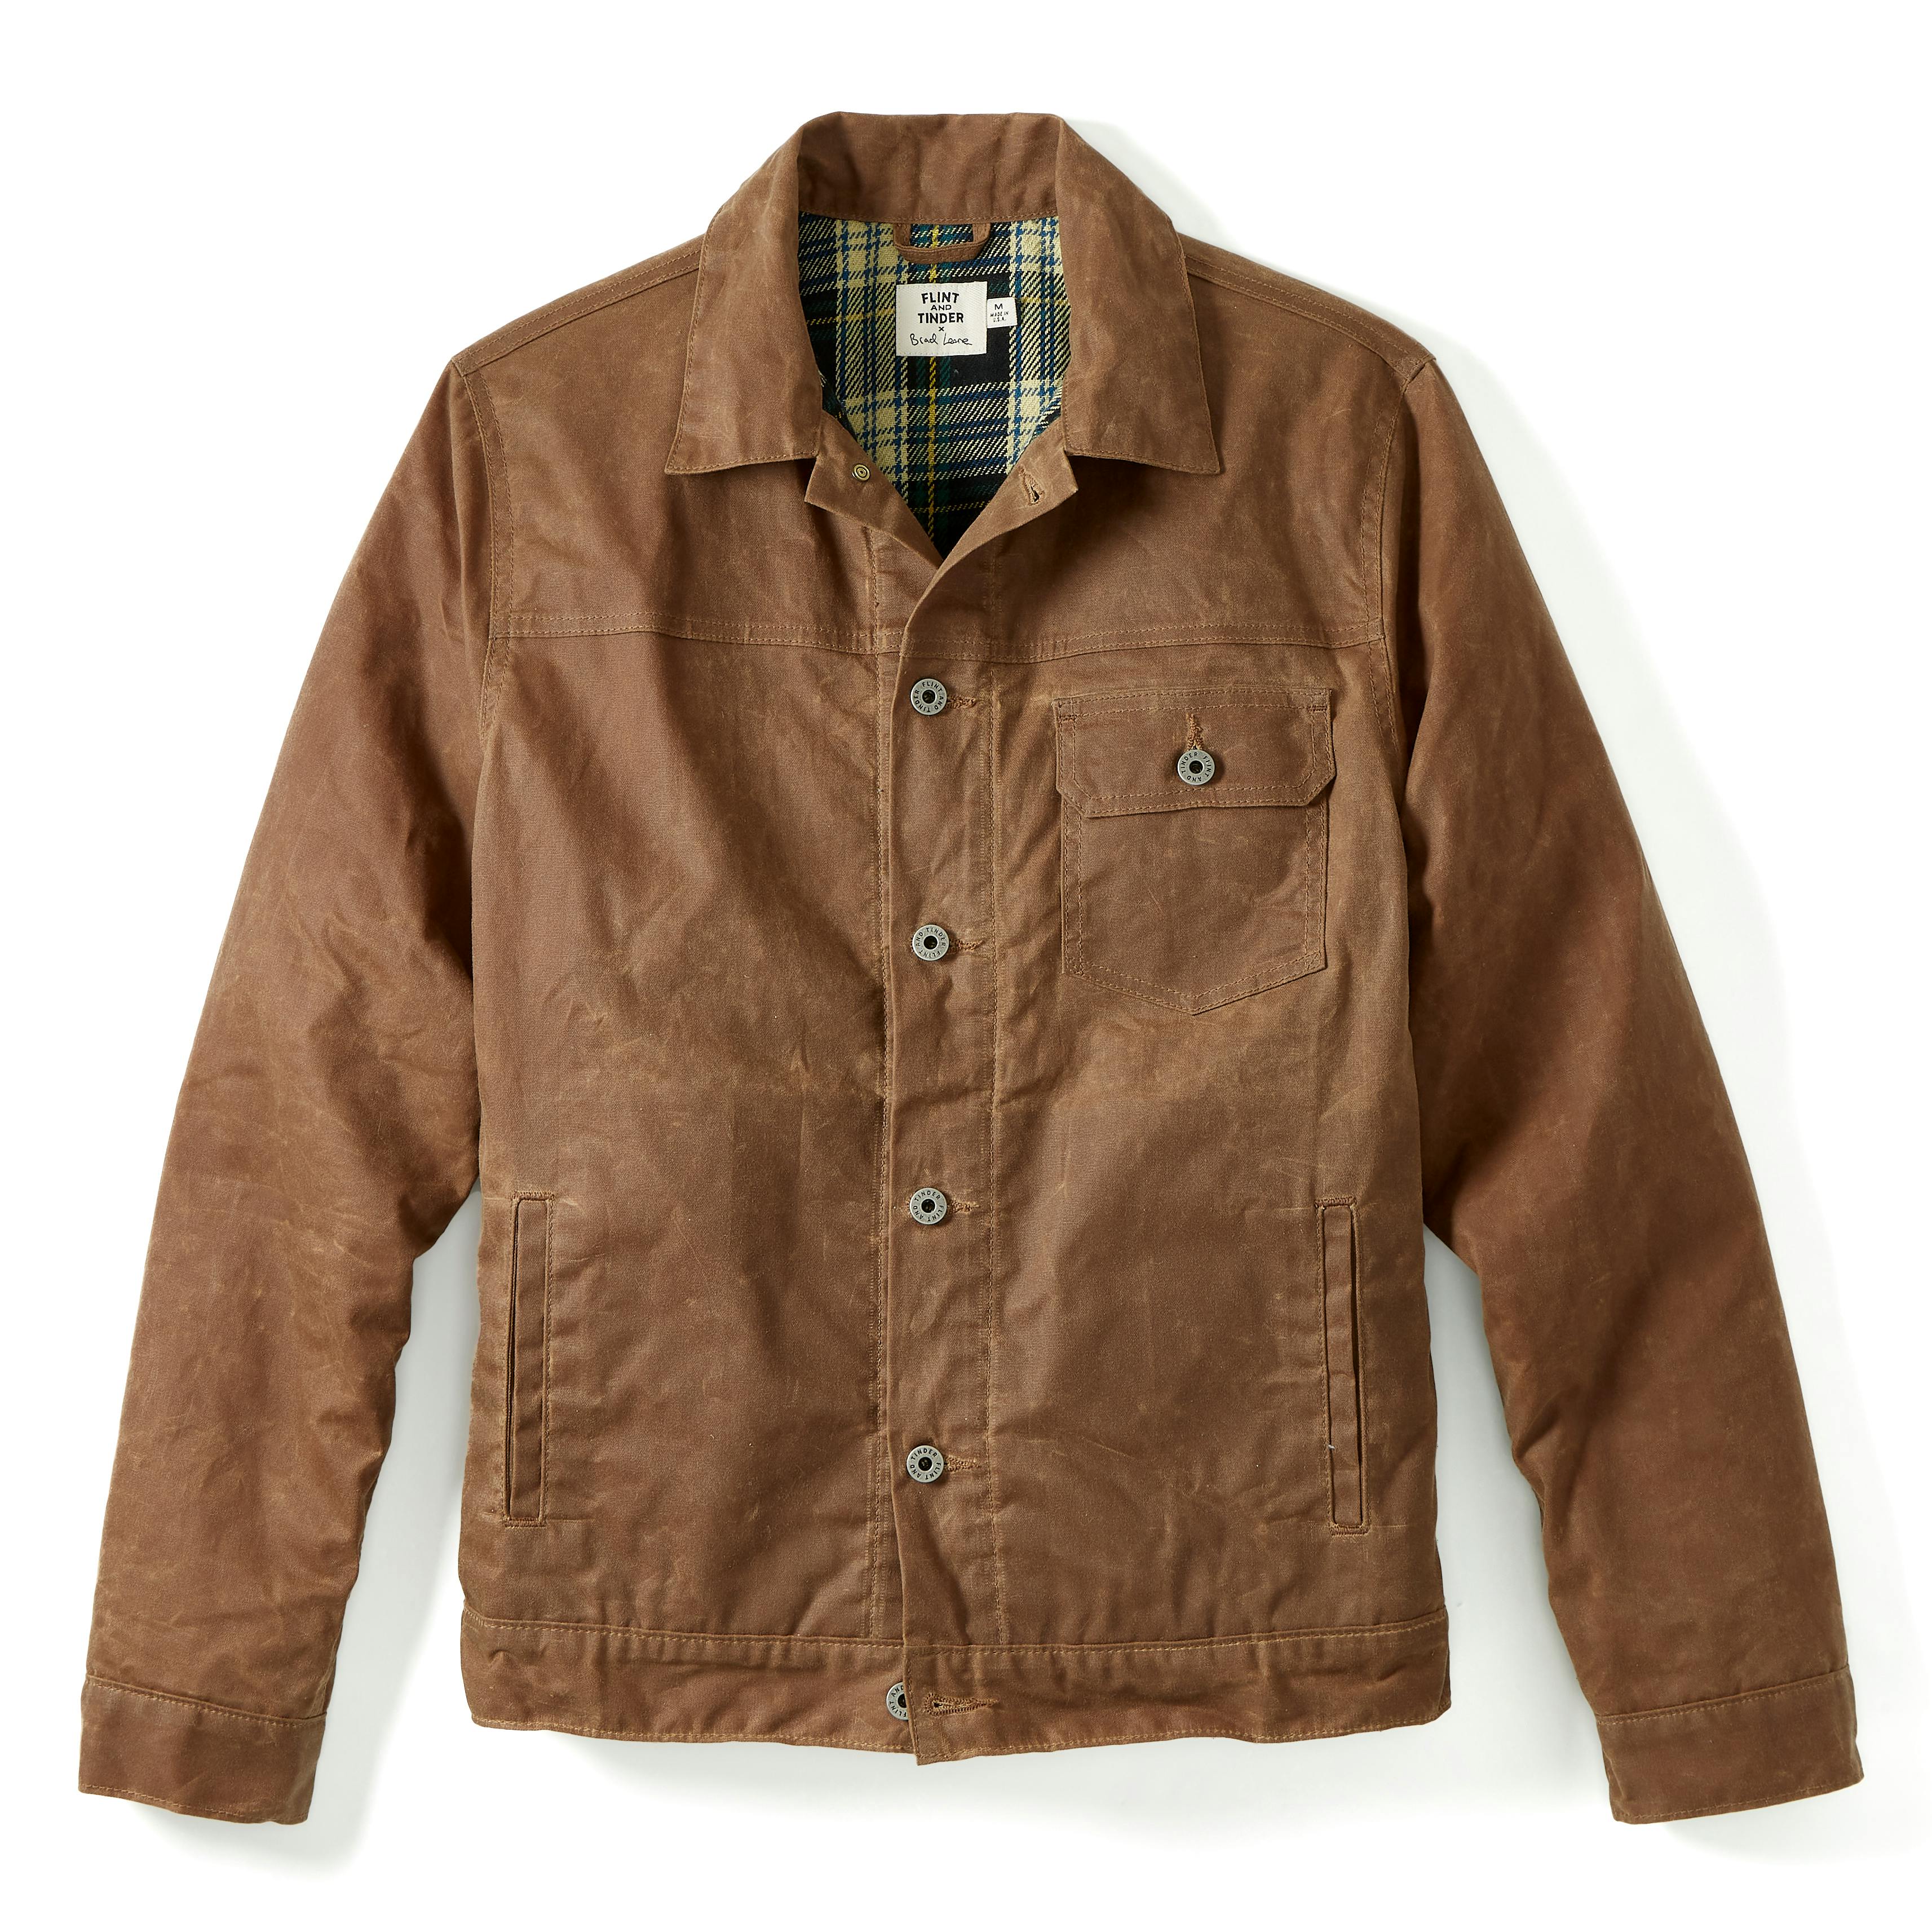 Brad Leone Flannel-lined Waxed Trucker Jacket